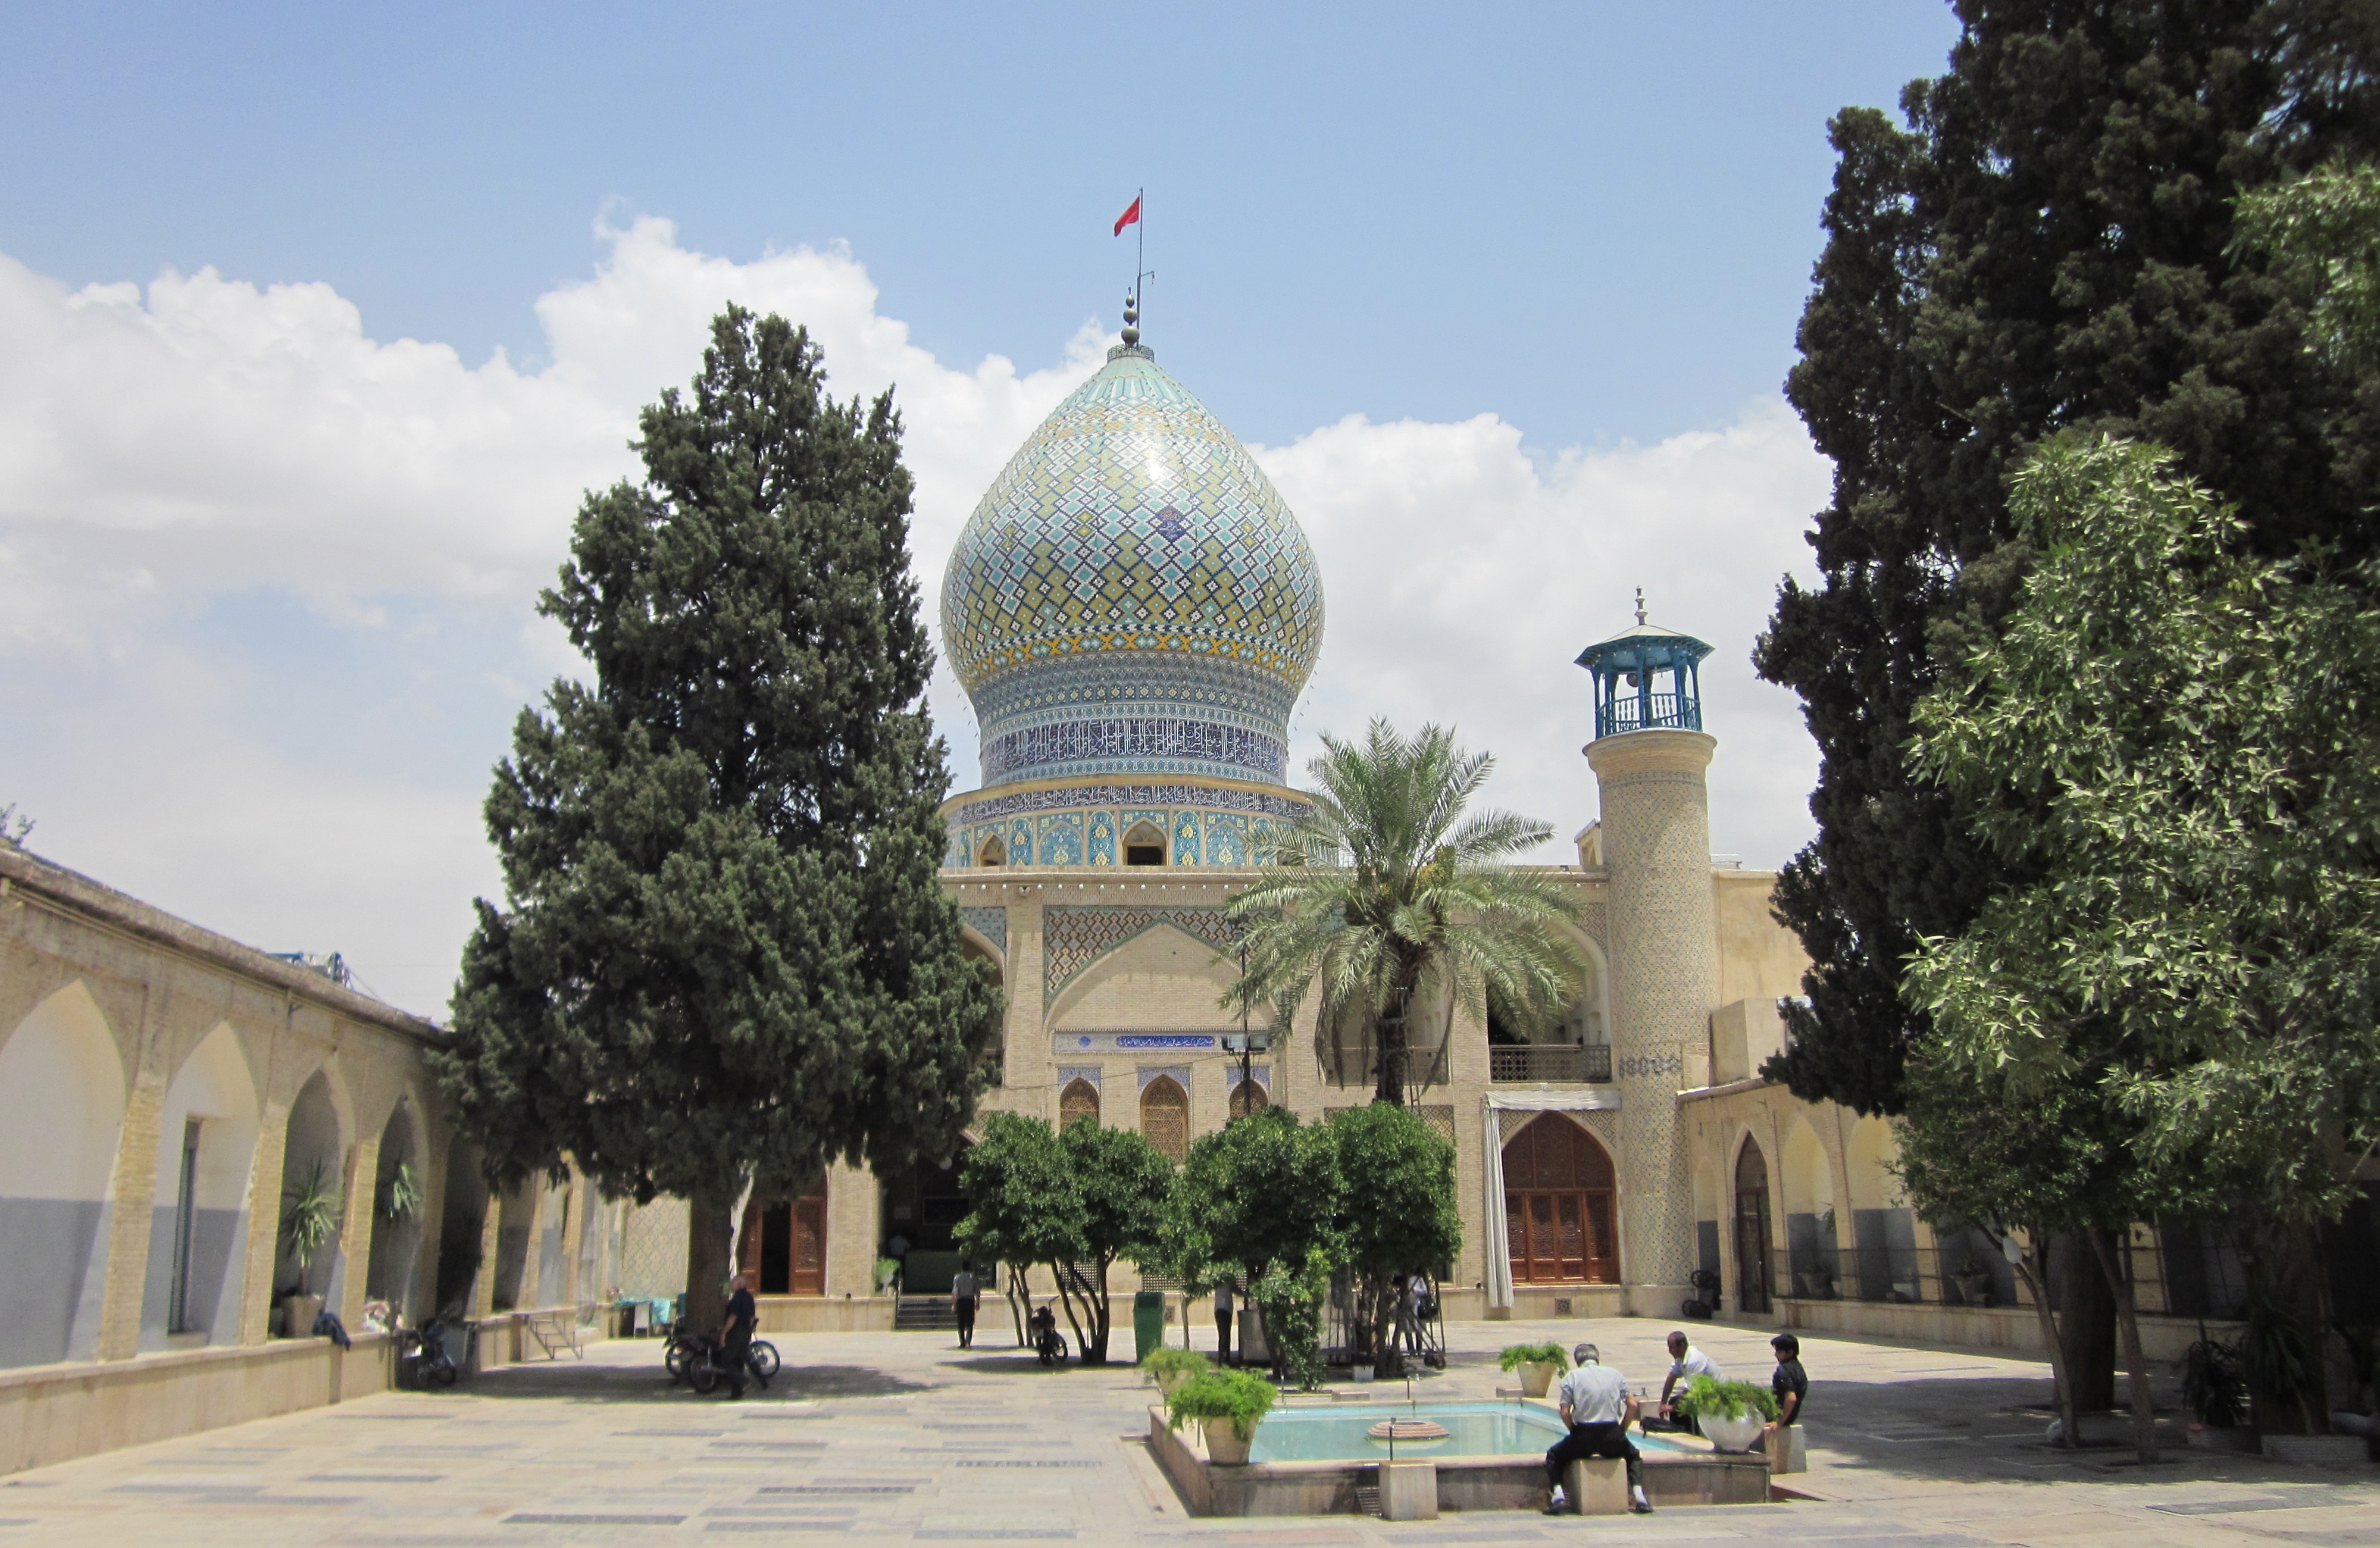 آرامگاه امامزاده علی بن حمزه - جاهای دیدنی شیراز